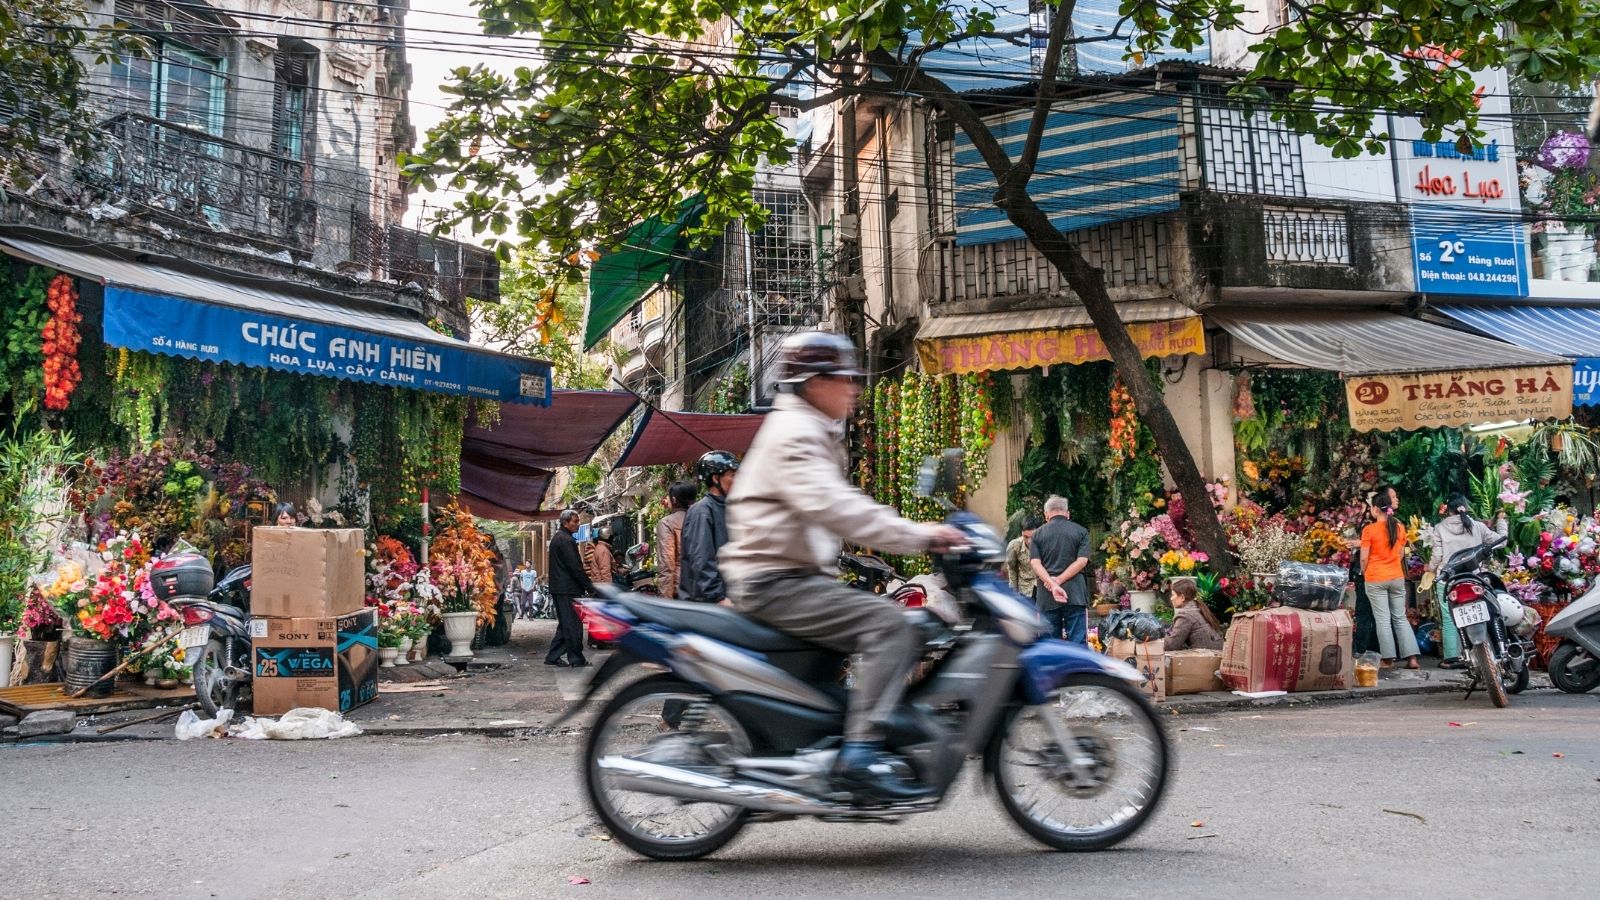 Le vieux quartier de Hanoi